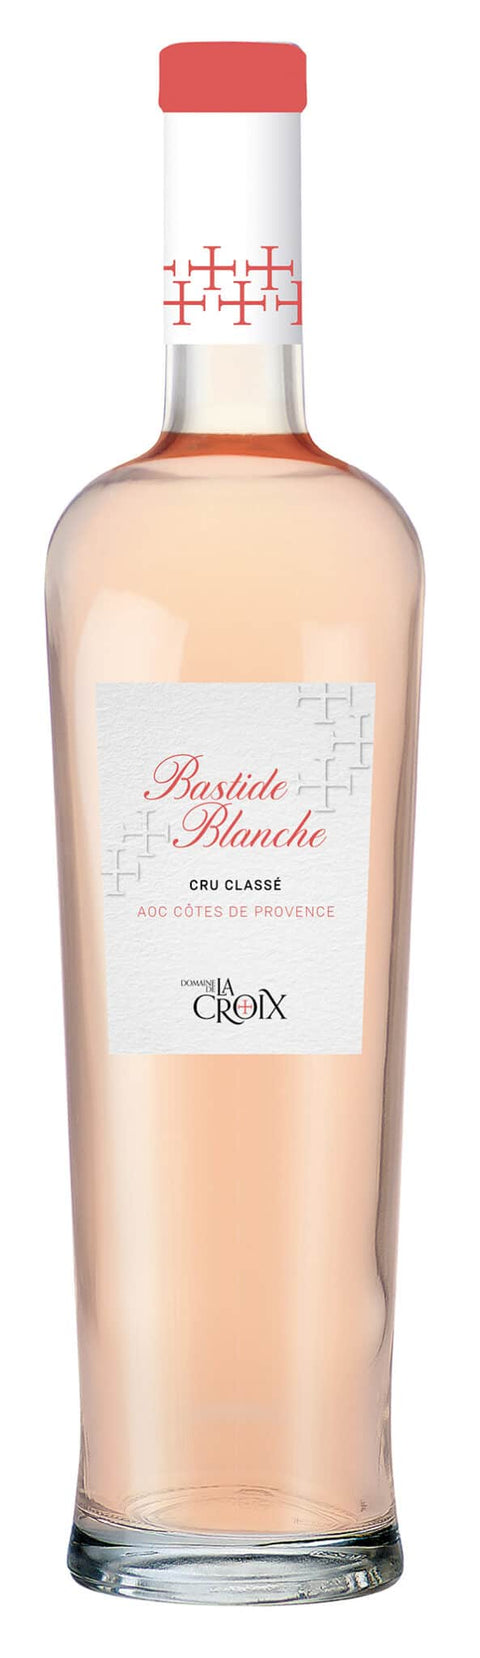 Bastide Blanche Rosé, Côtes de Provence Cru Classé 2021 - 150 cl